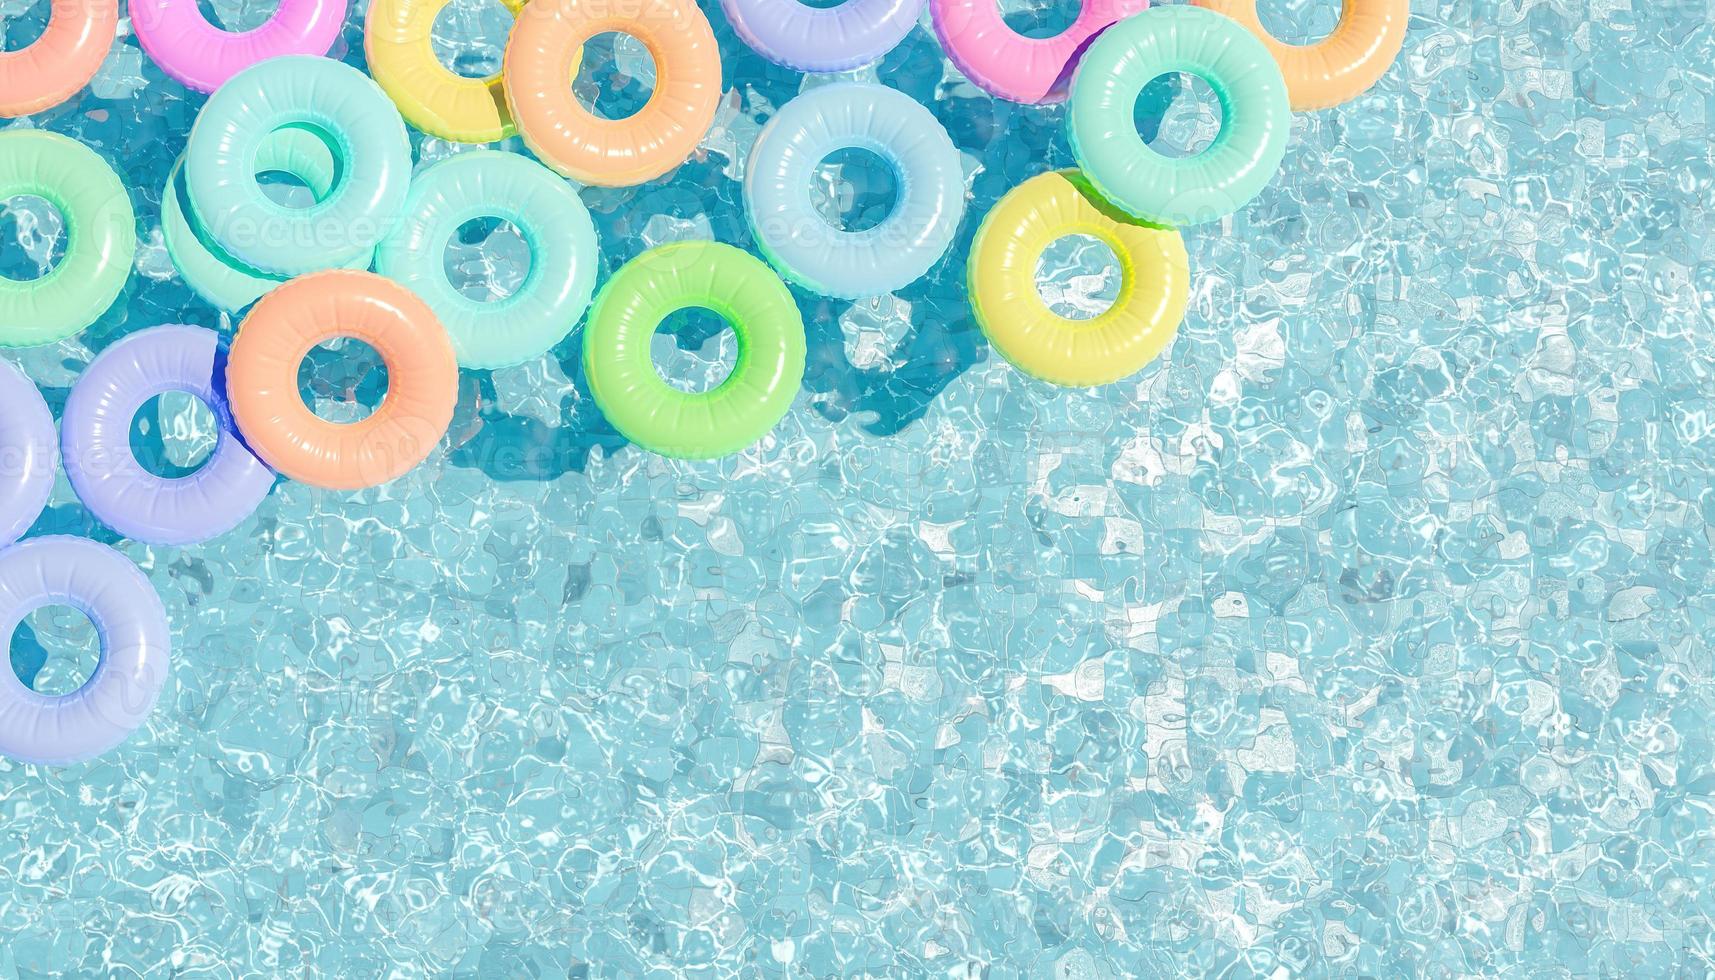 Vue de dessus de la piscine avec beaucoup de flotteurs de couleur pastel, rendu 3d photo